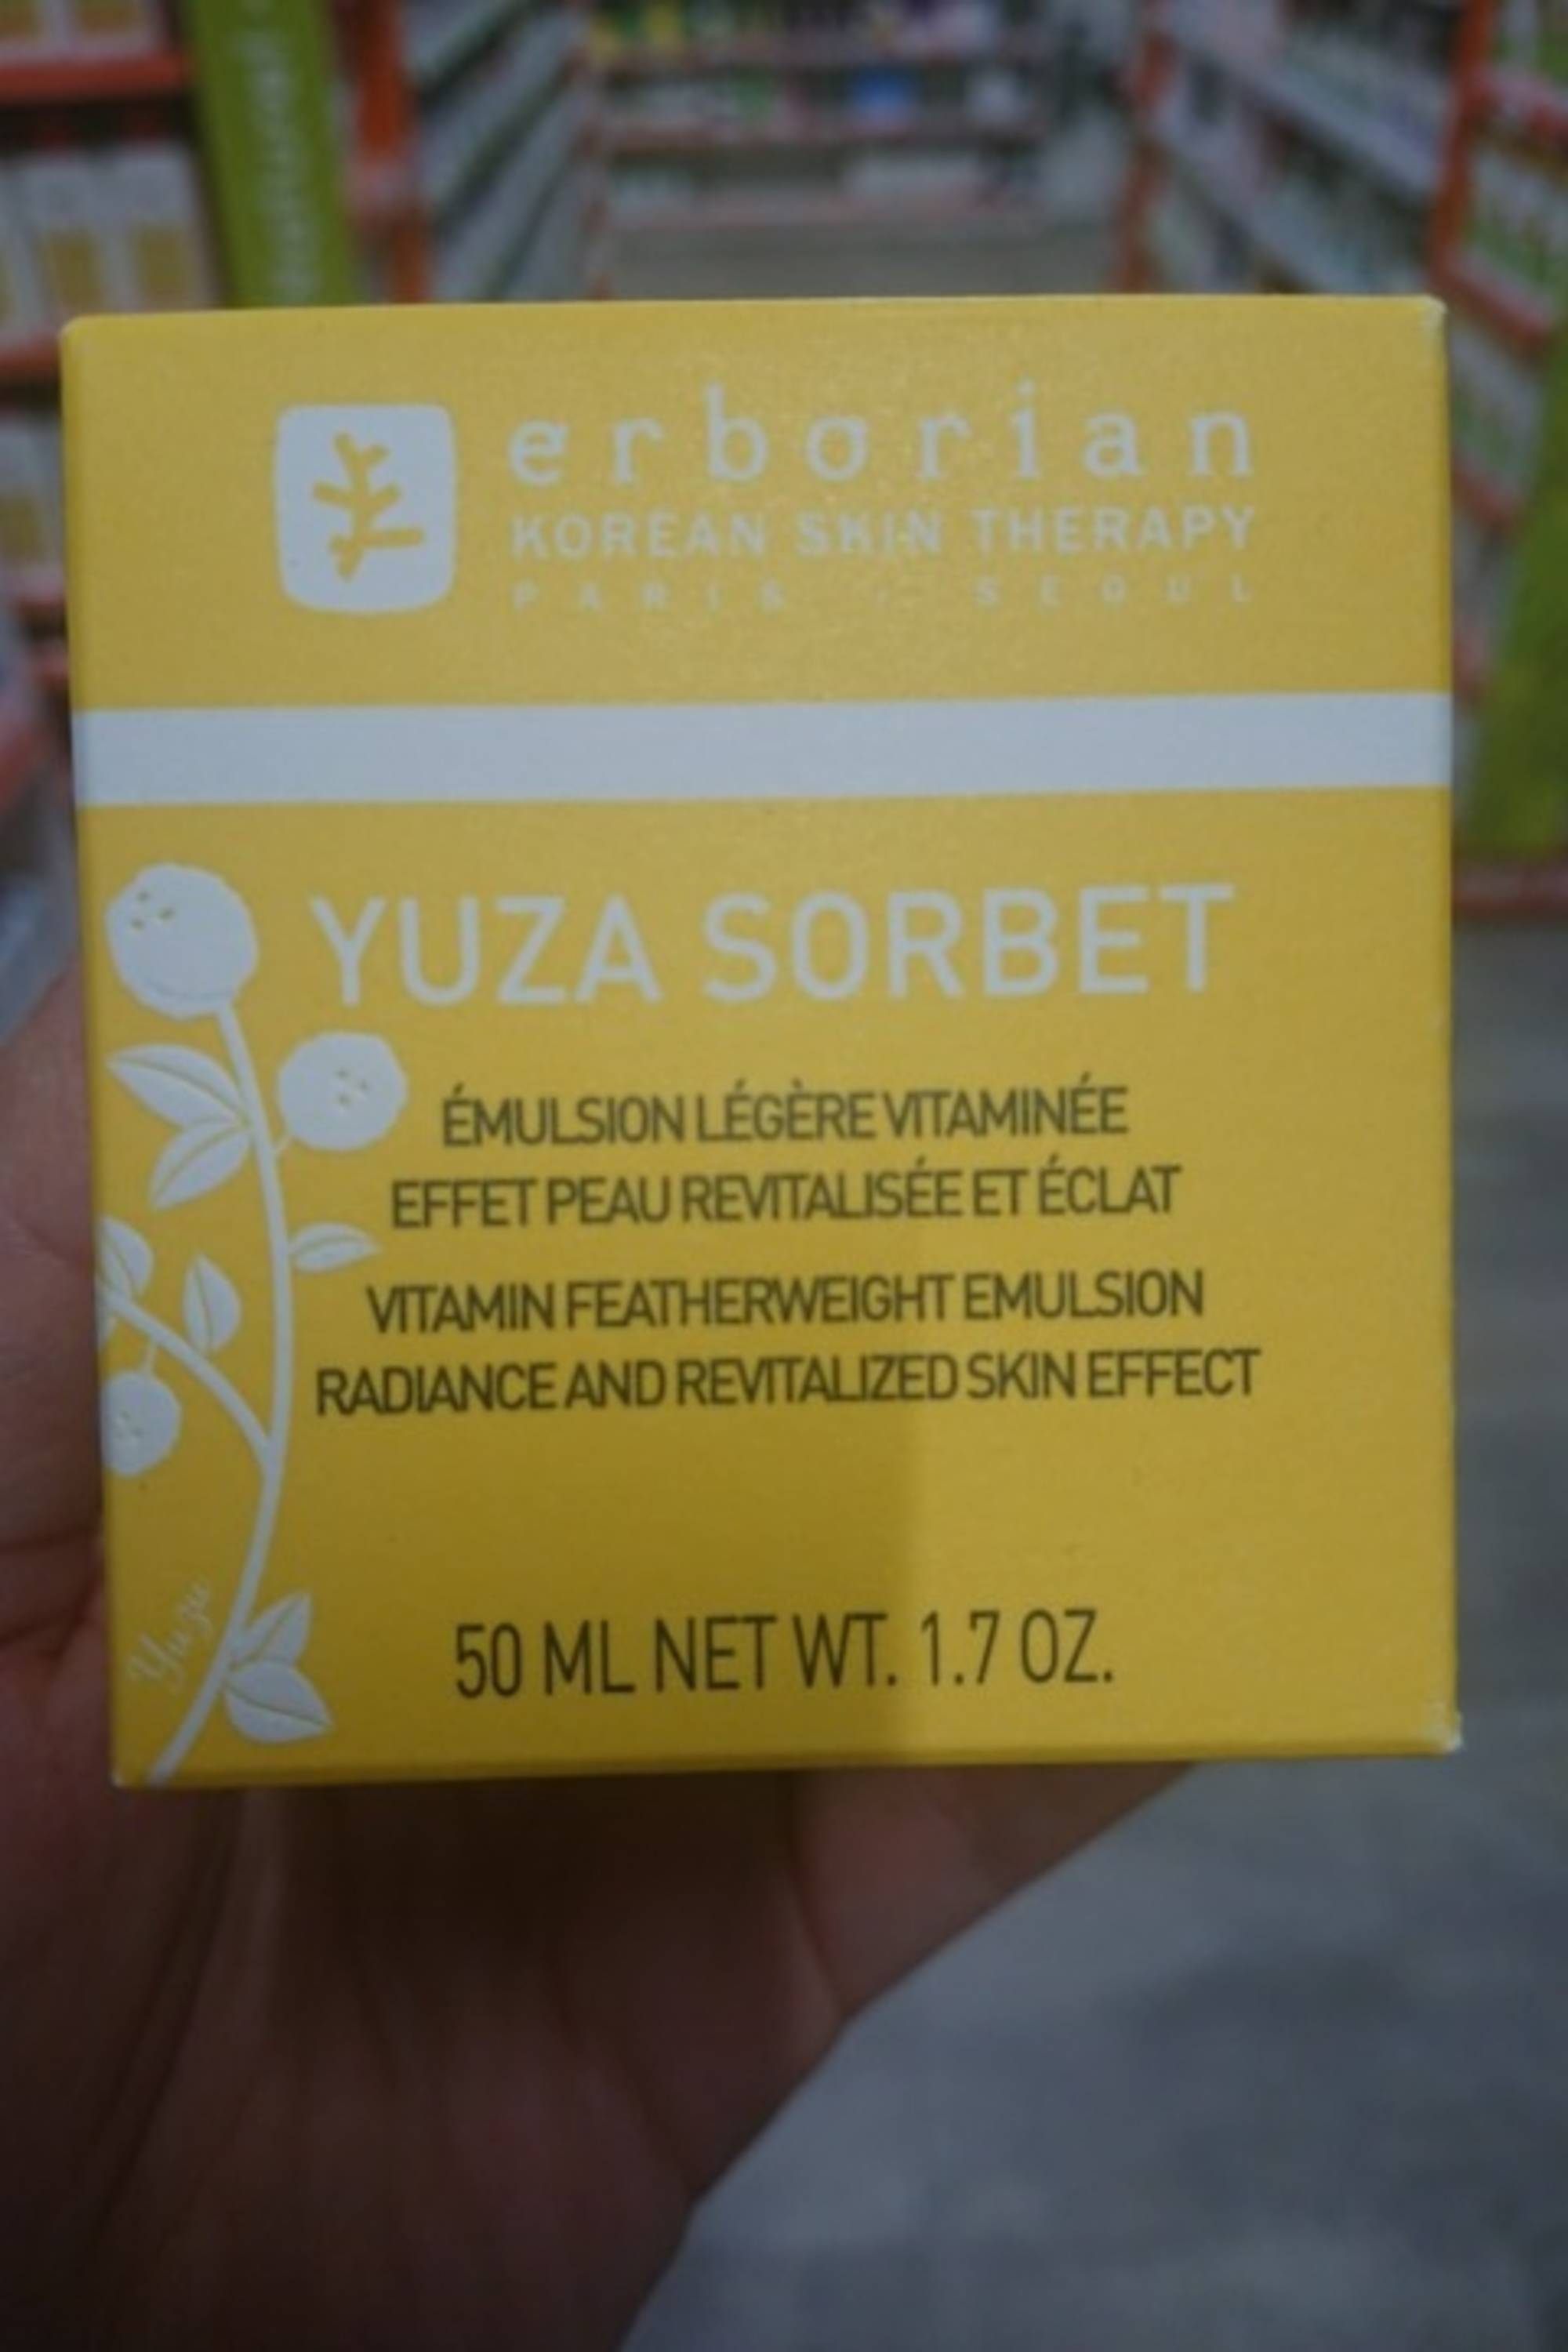 ERBORIAN - Yuza sorbet - Émulsion légère vitaminée